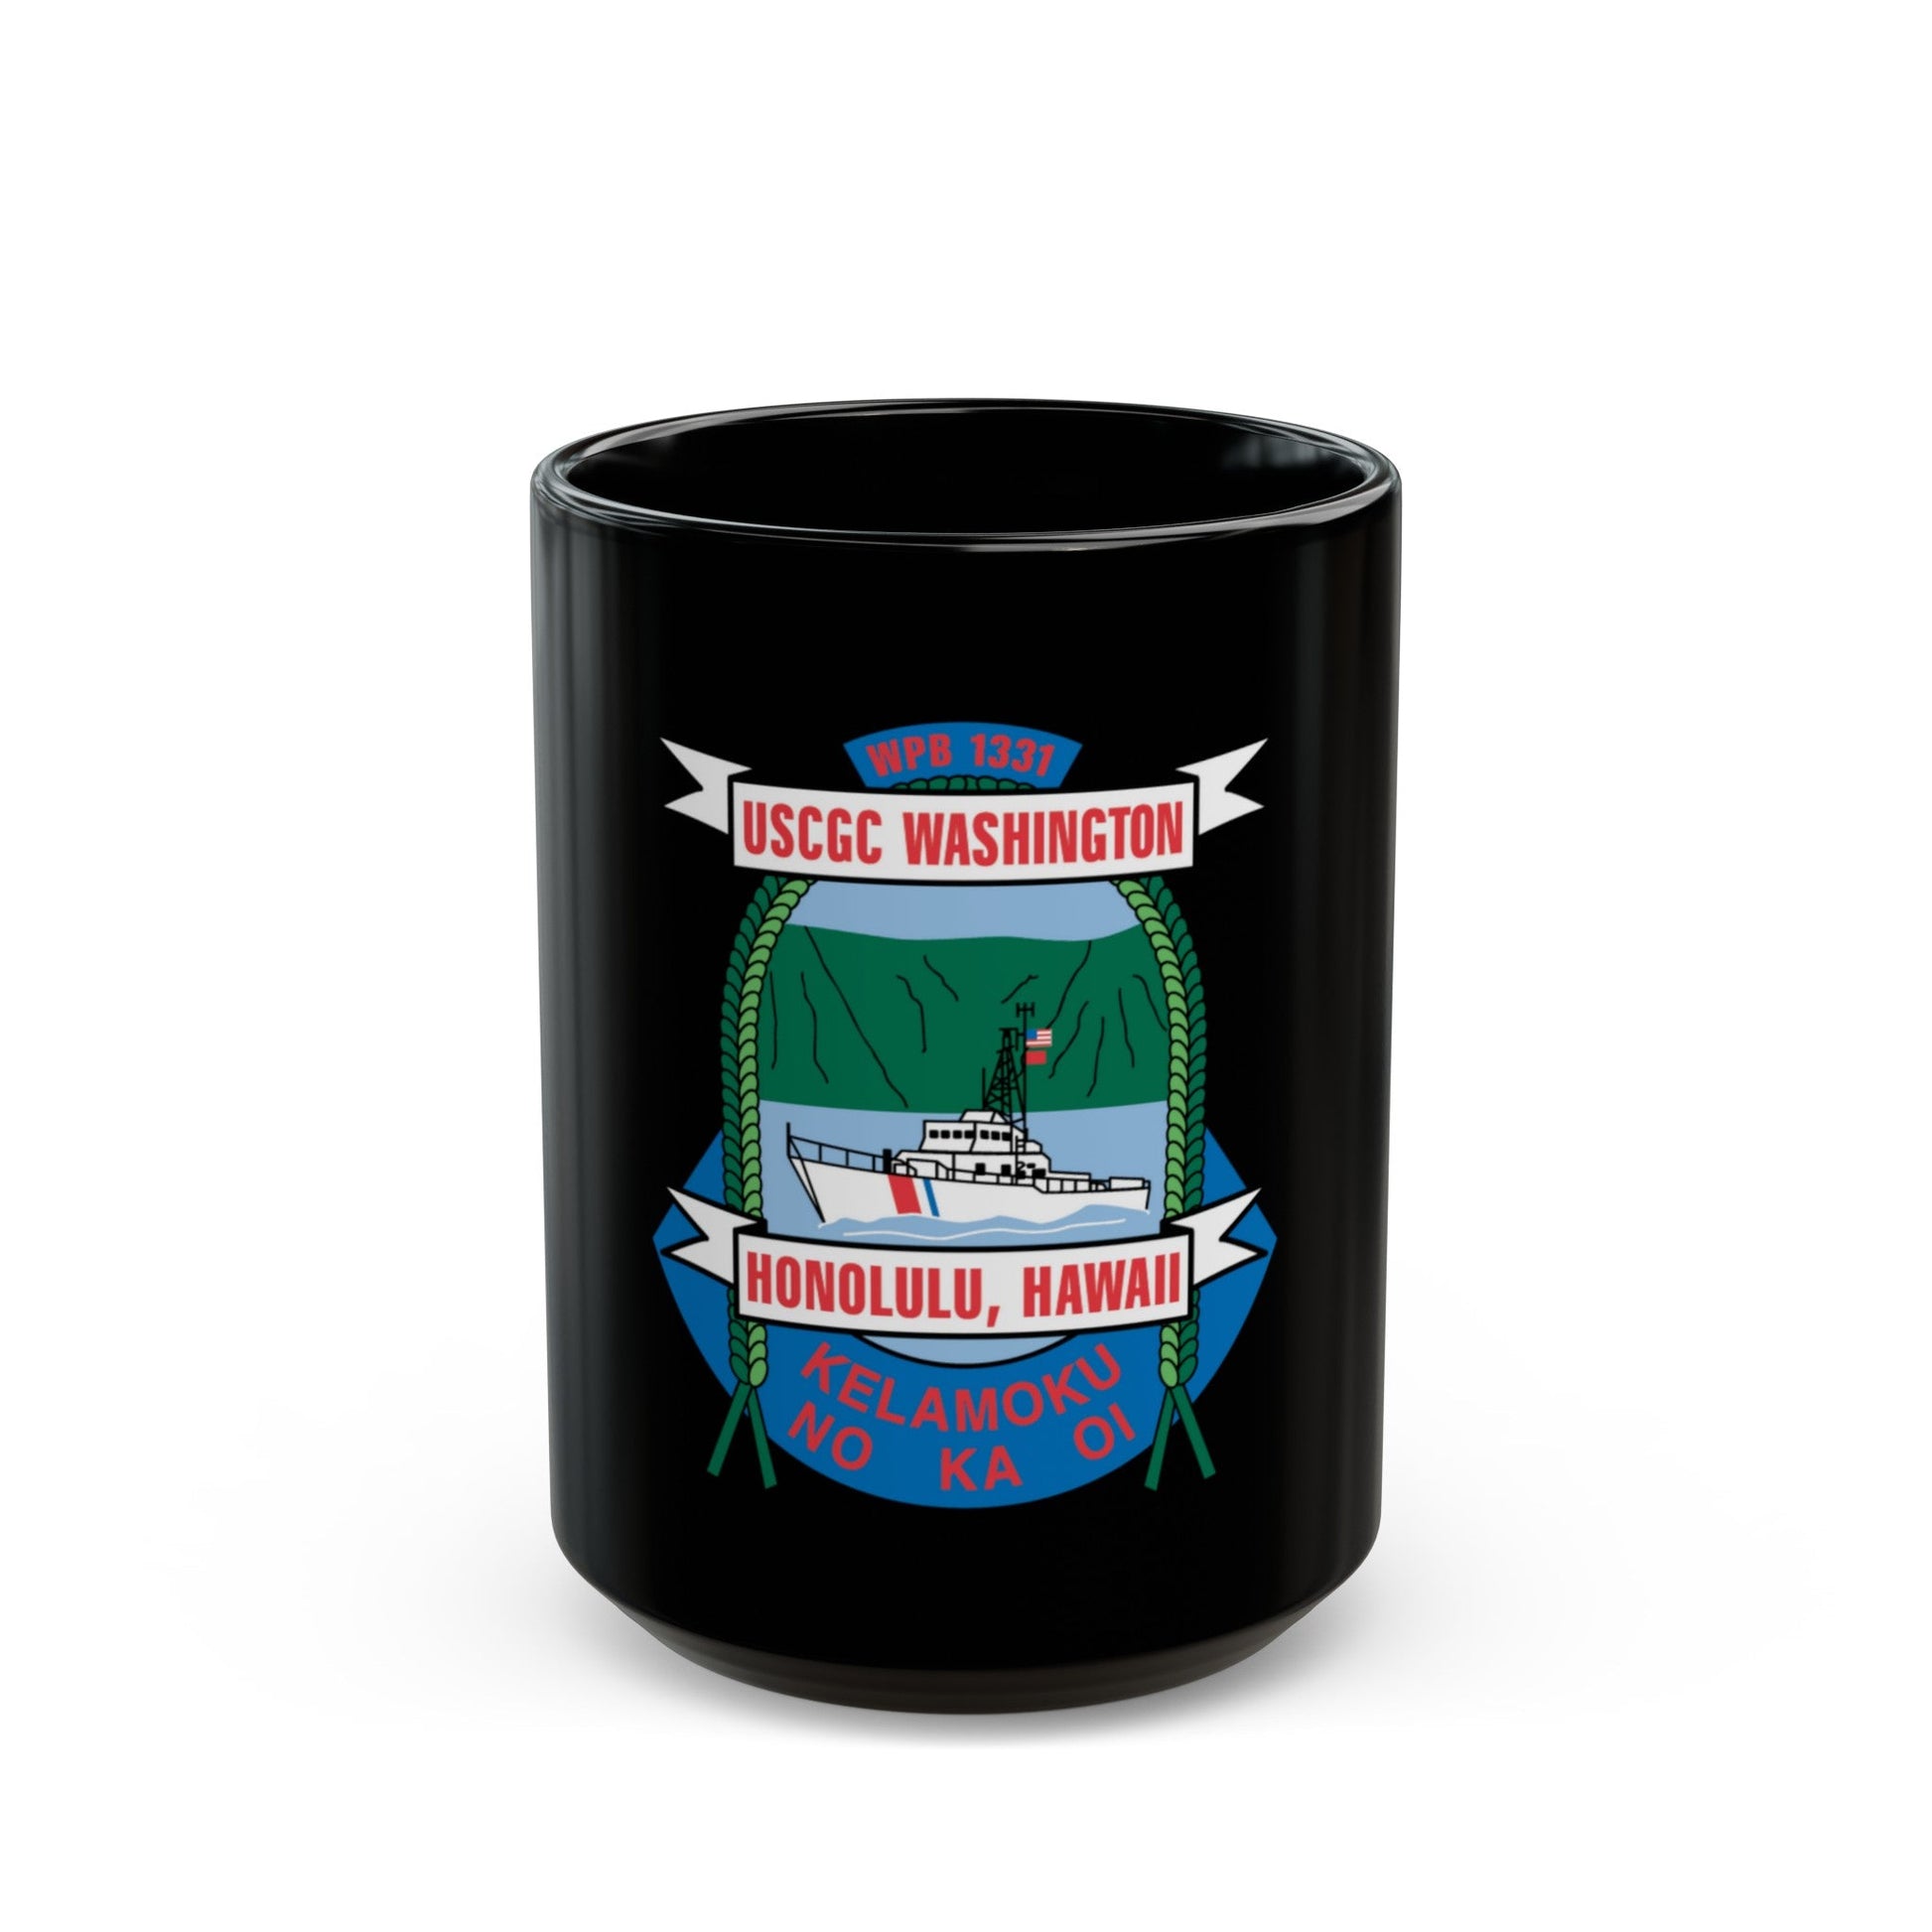 USCGC Washington WPB 1331 Honolulu Hawaii (U.S. Coast Guard) Black Coffee Mug-15oz-The Sticker Space